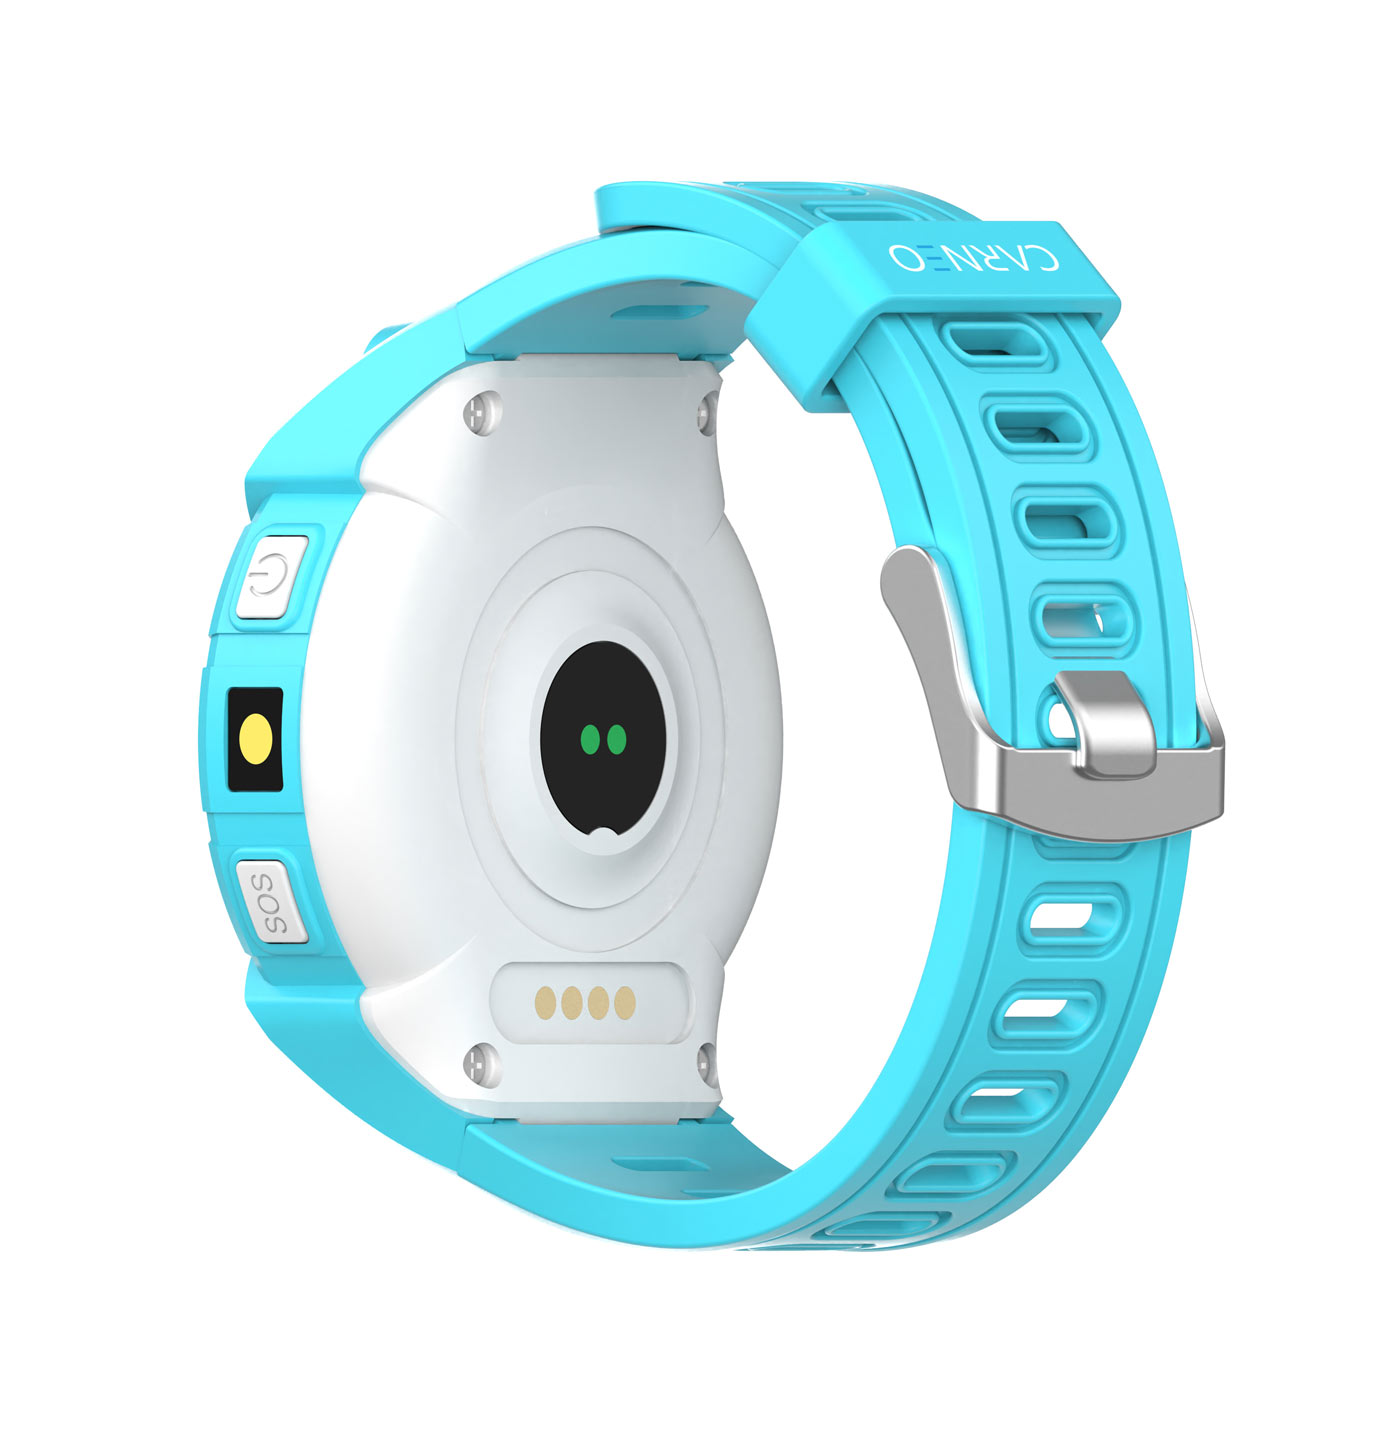 CARNEO Guard Smartwatch, Blau mini GPS + Kinder blue,